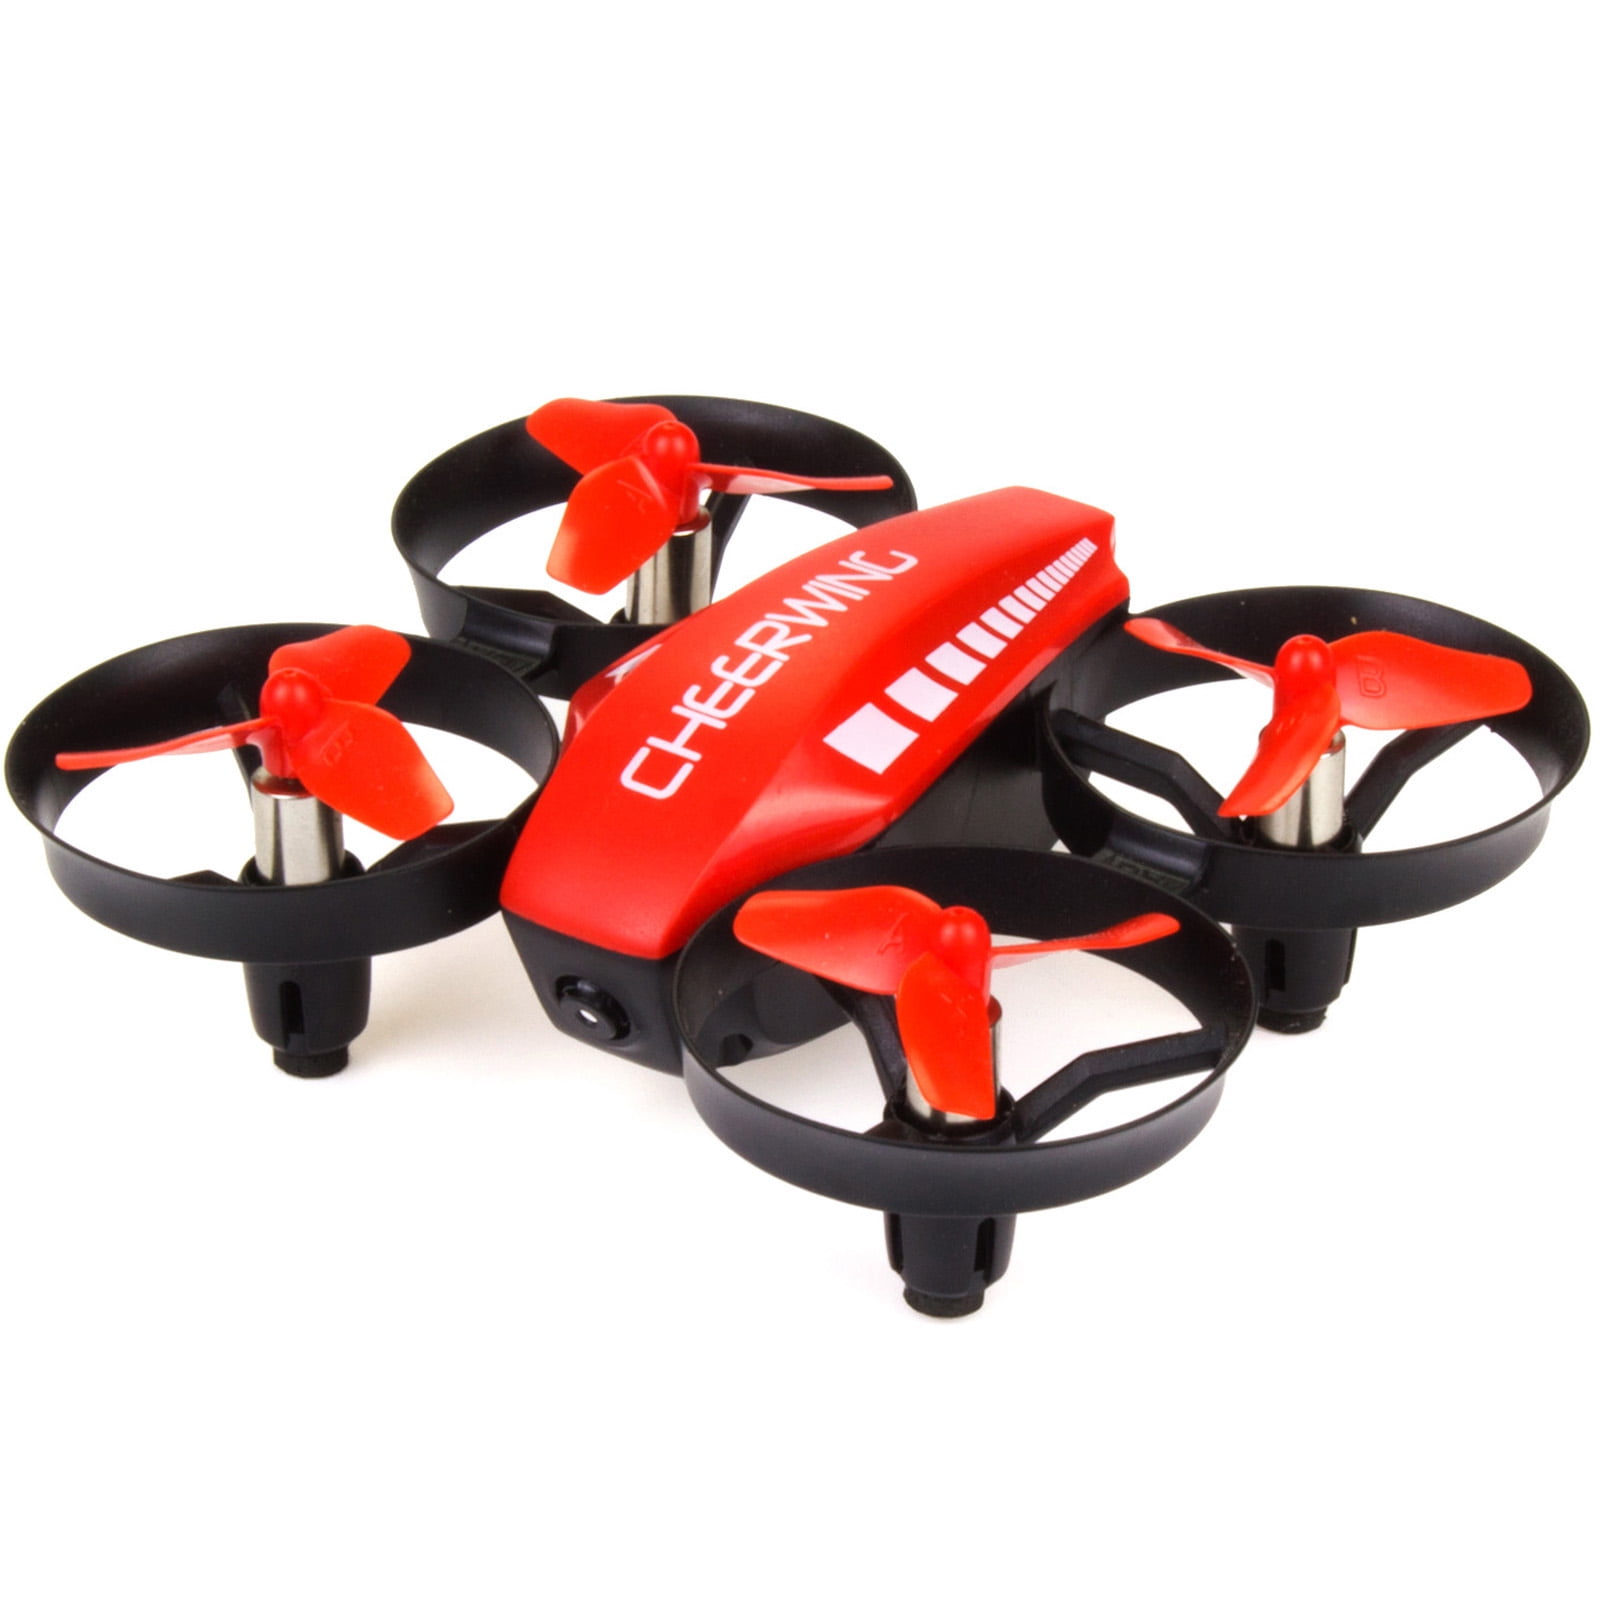 Cheerwing CW10 Mini RC Drone Wifi FPV Drone with Camera Remote Control